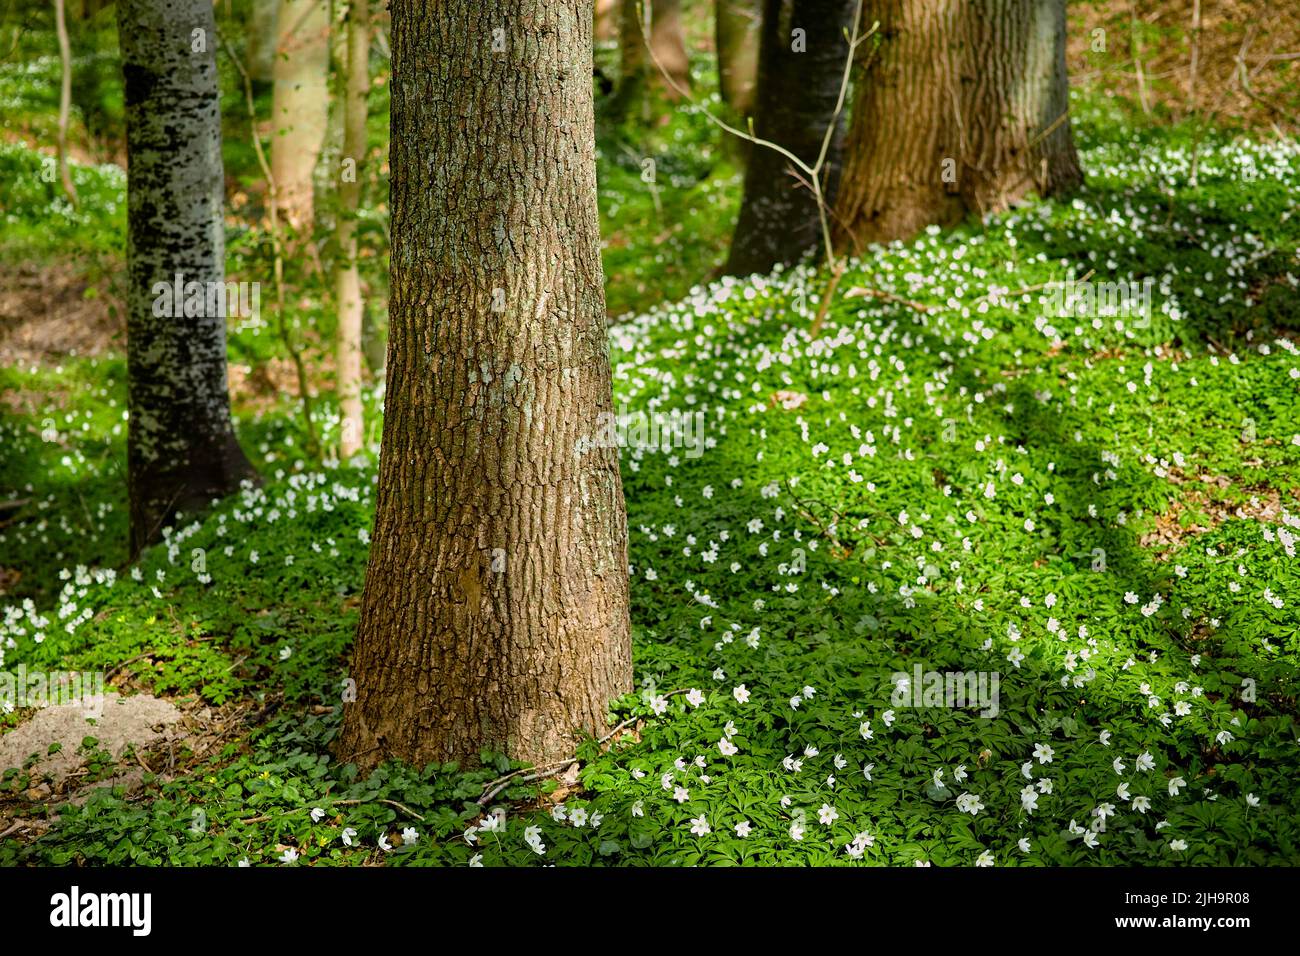 Wilde Bäume wachsen in einem Wald mit weißen Anemone nemorosa Blumen und grünen Pflanzen. Landschaftlich reizvolle Landschaft mit hohen Holzstämmen und üppigen Blättern in der Natur Stockfoto